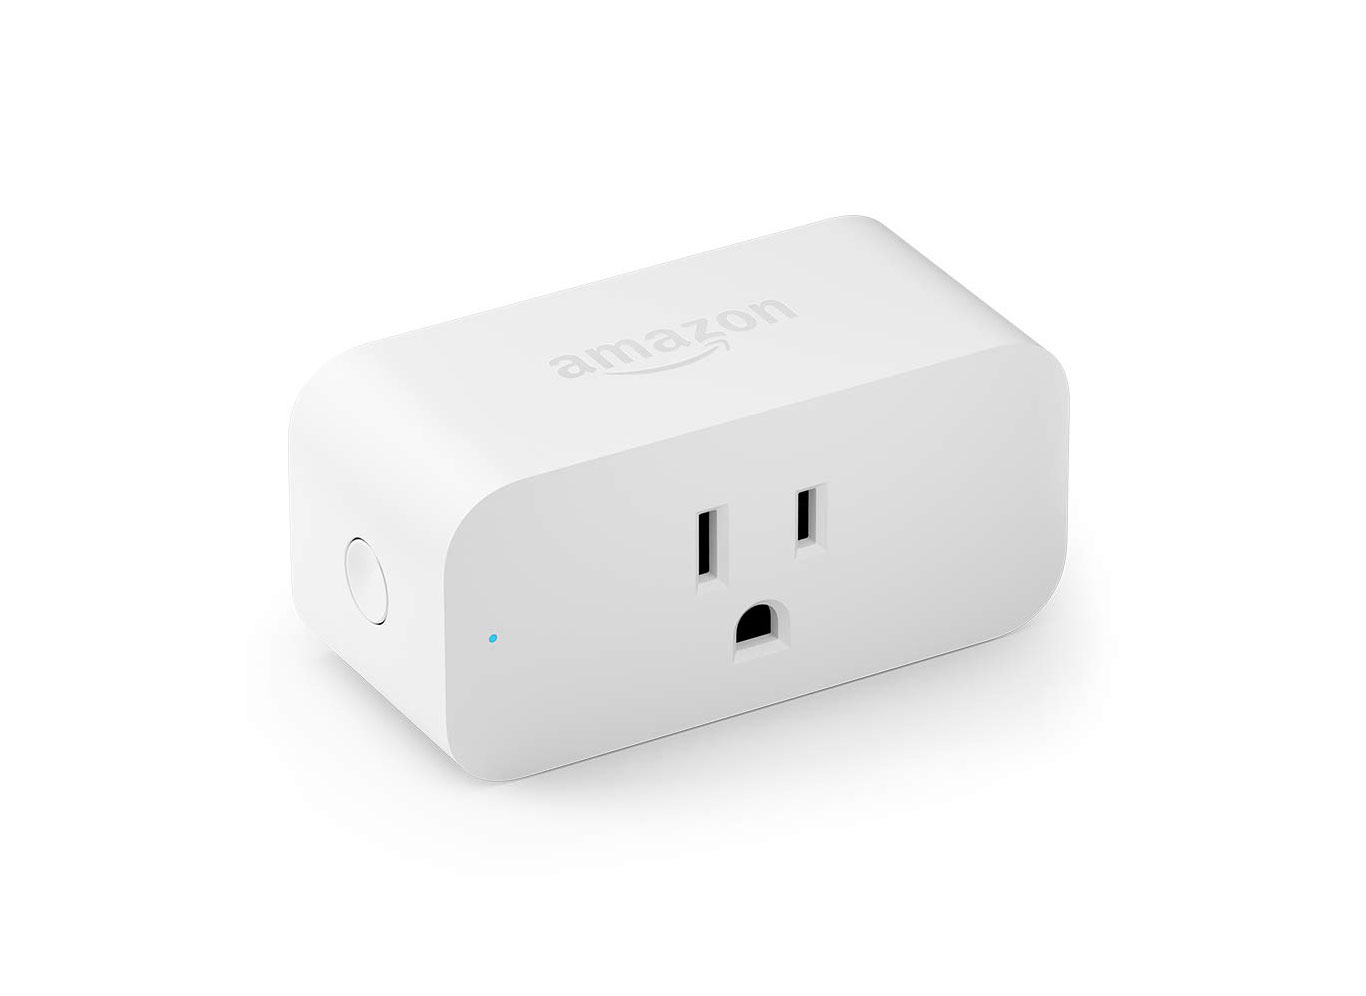 Amazon Alexa-Enabled Smart Plug on Amazon